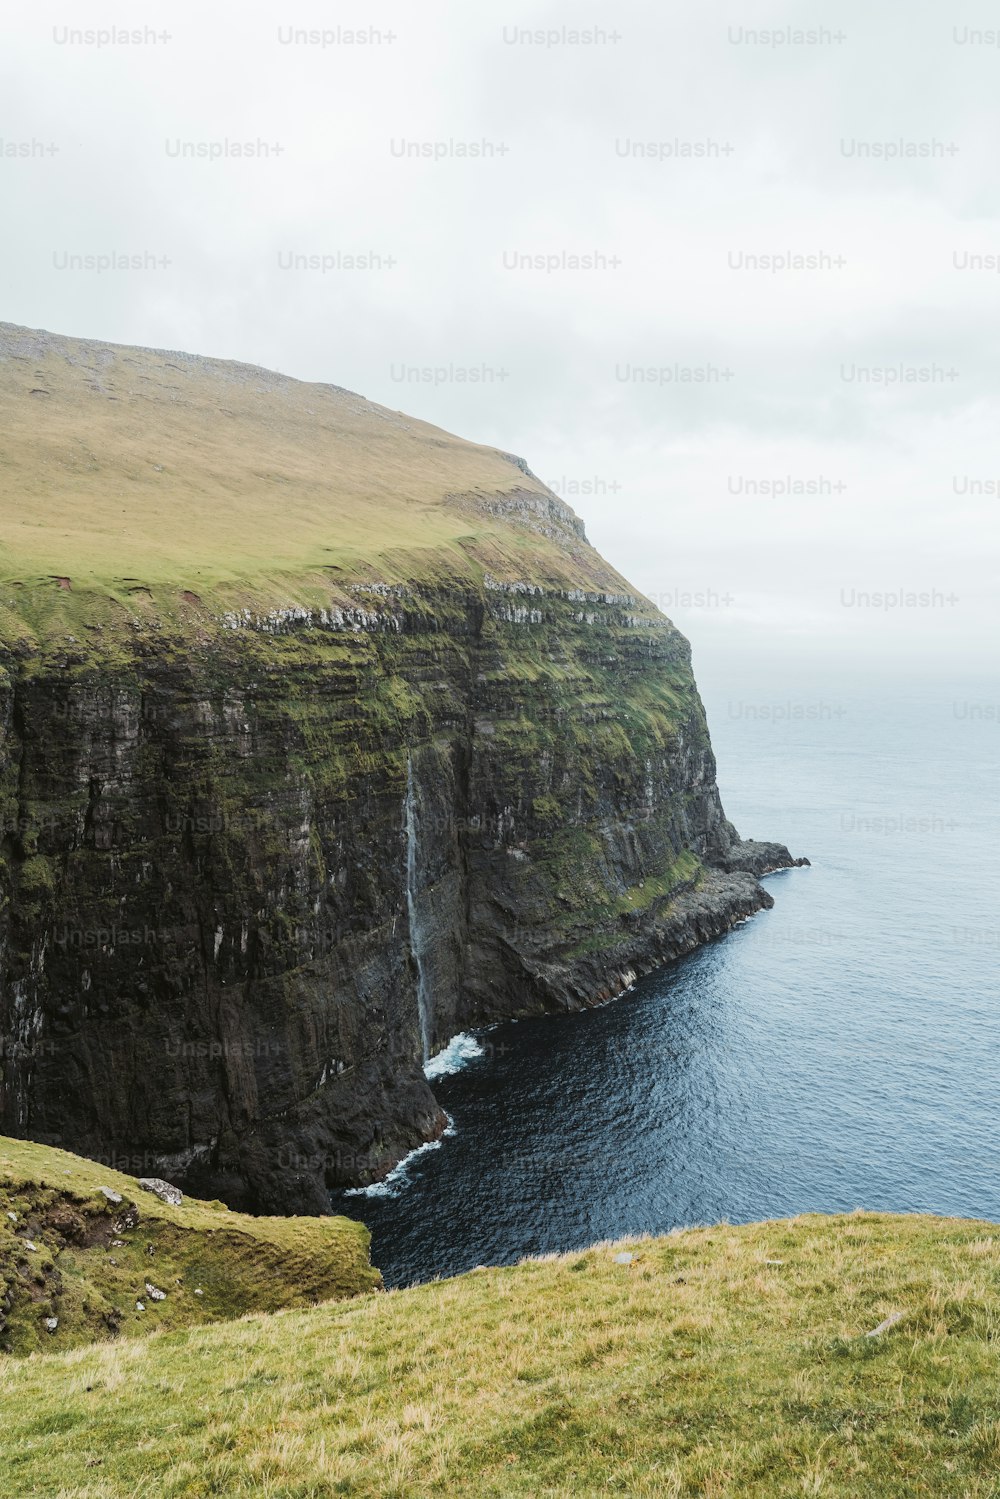 Una oveja parada en el borde de un acantilado con vistas al océano